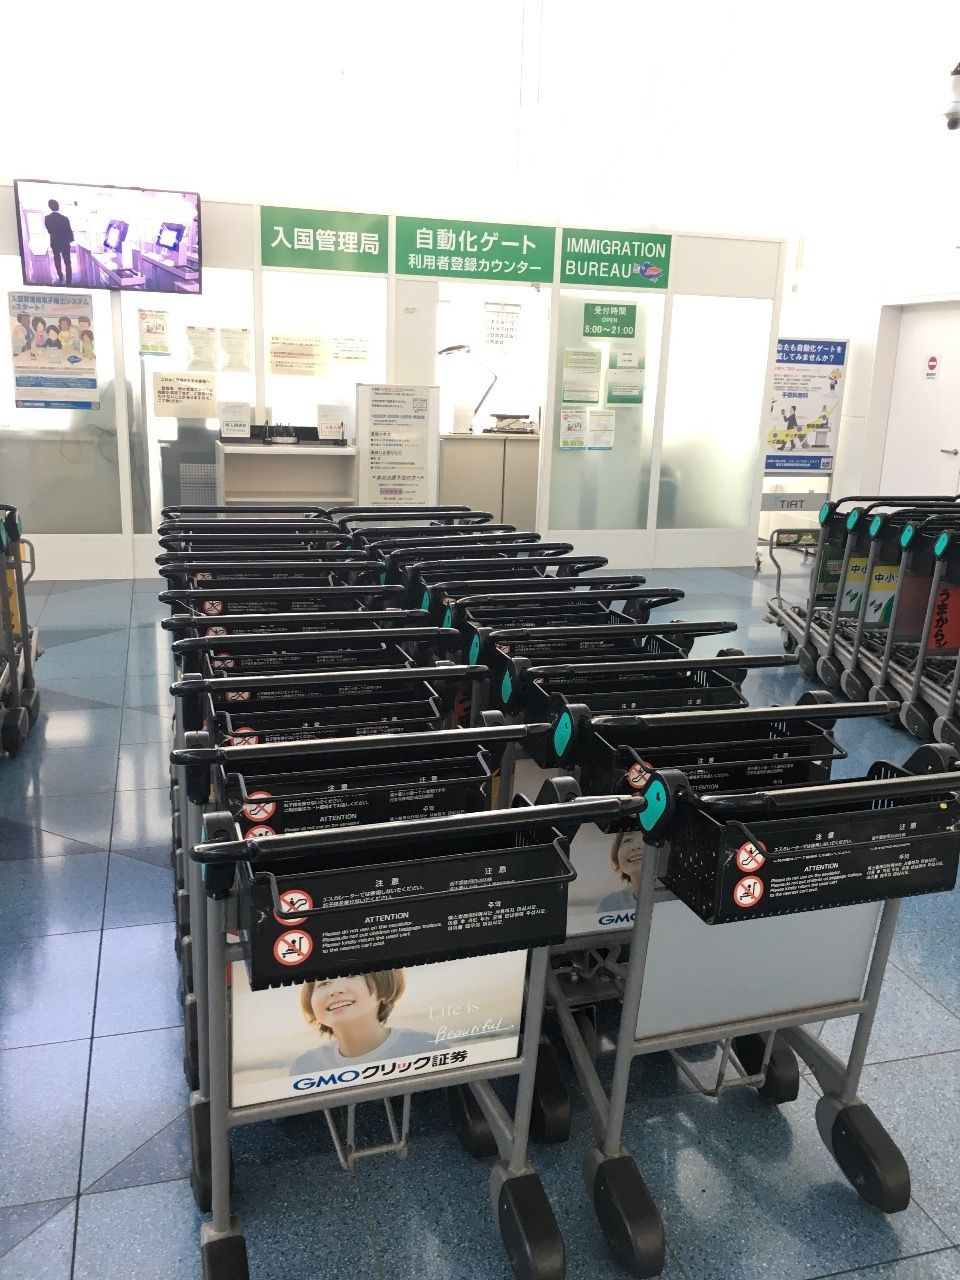 海外に出かける際、入出国審査の行列に並ばず
入れる「自動化ゲート」